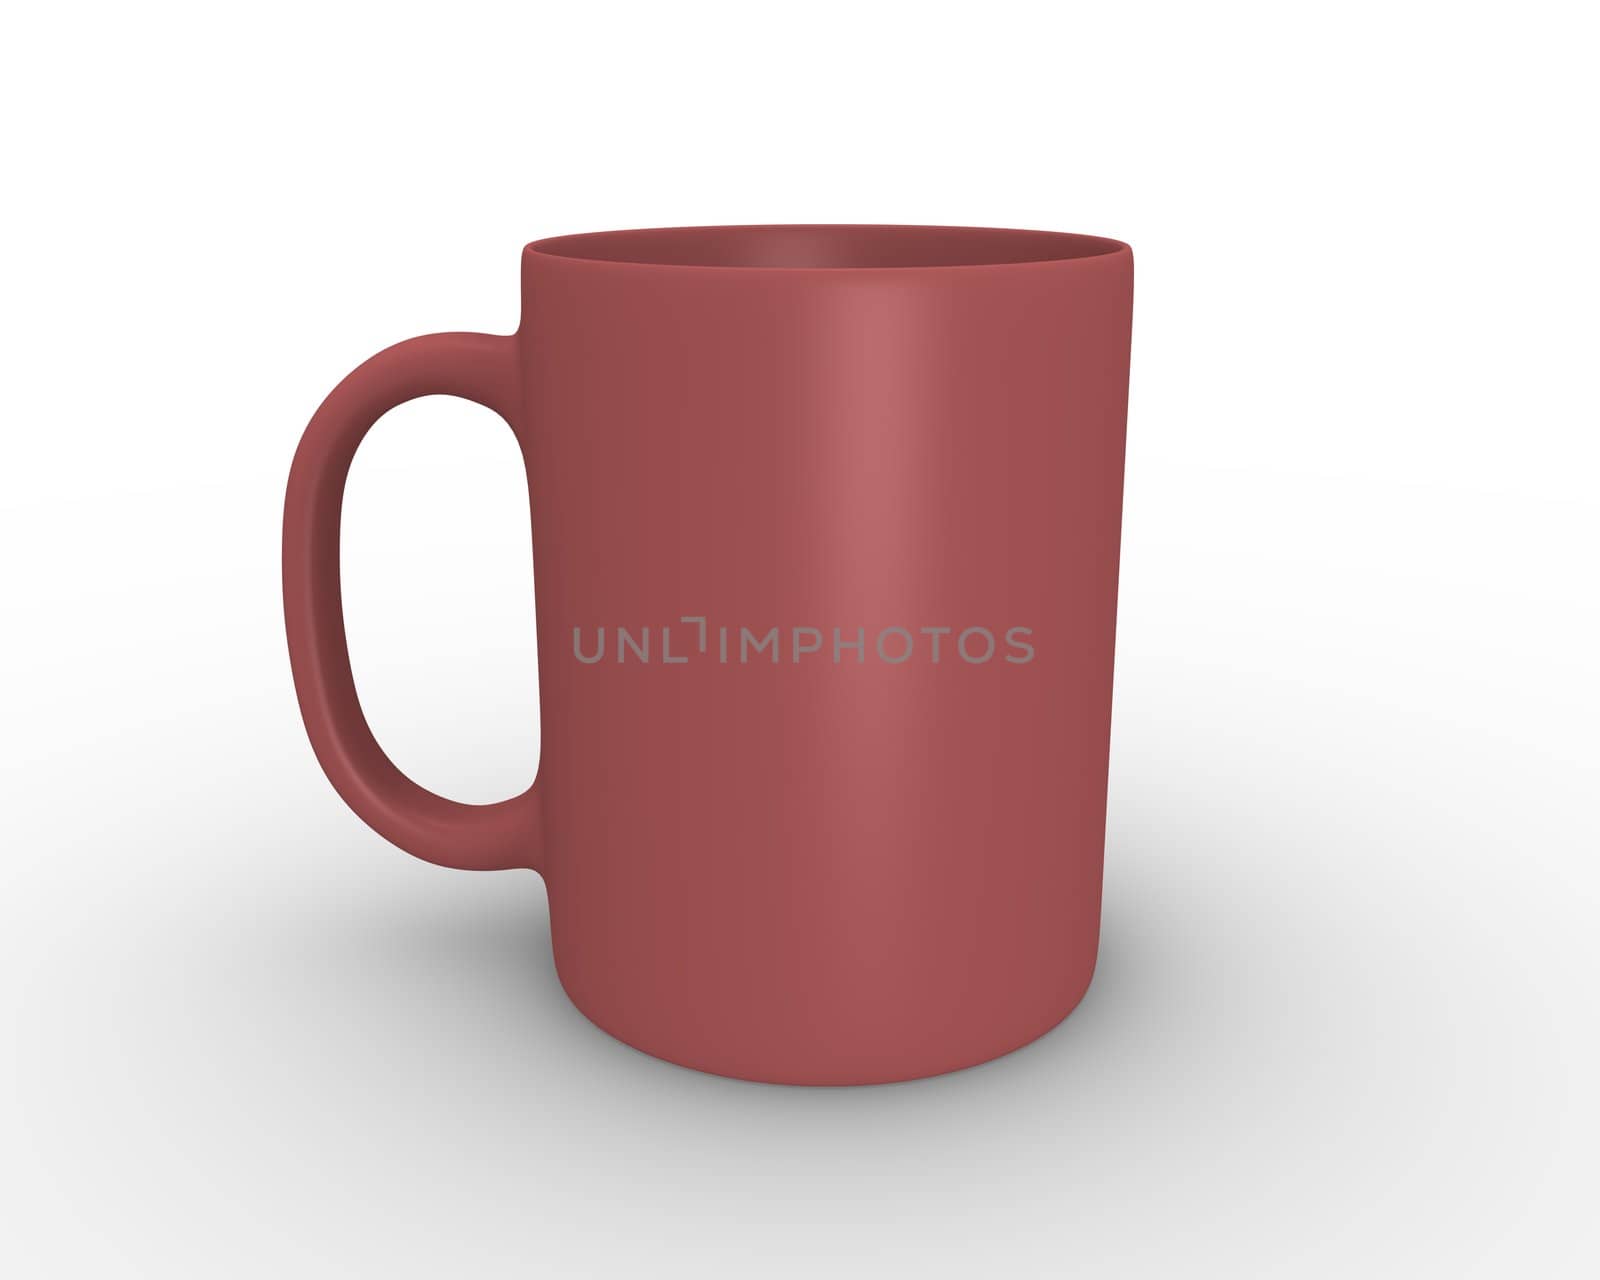 3D rendered illustration of red tea/coffee mug
